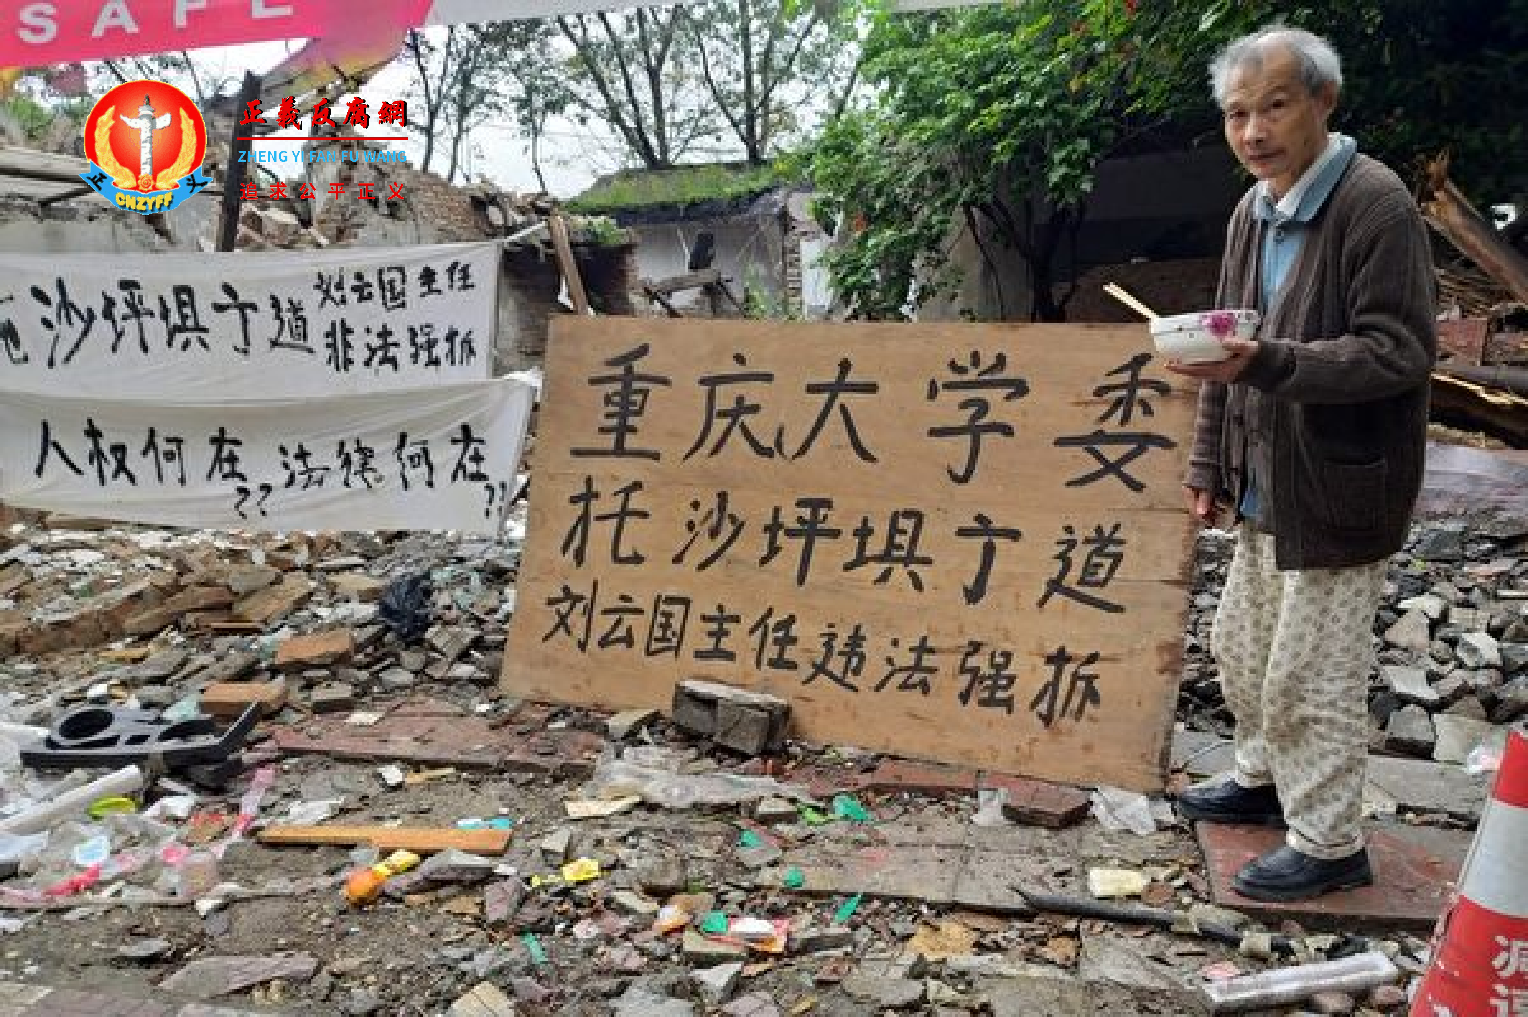 被官员骗去谈话 重庆七旬老人回家见房子被拆